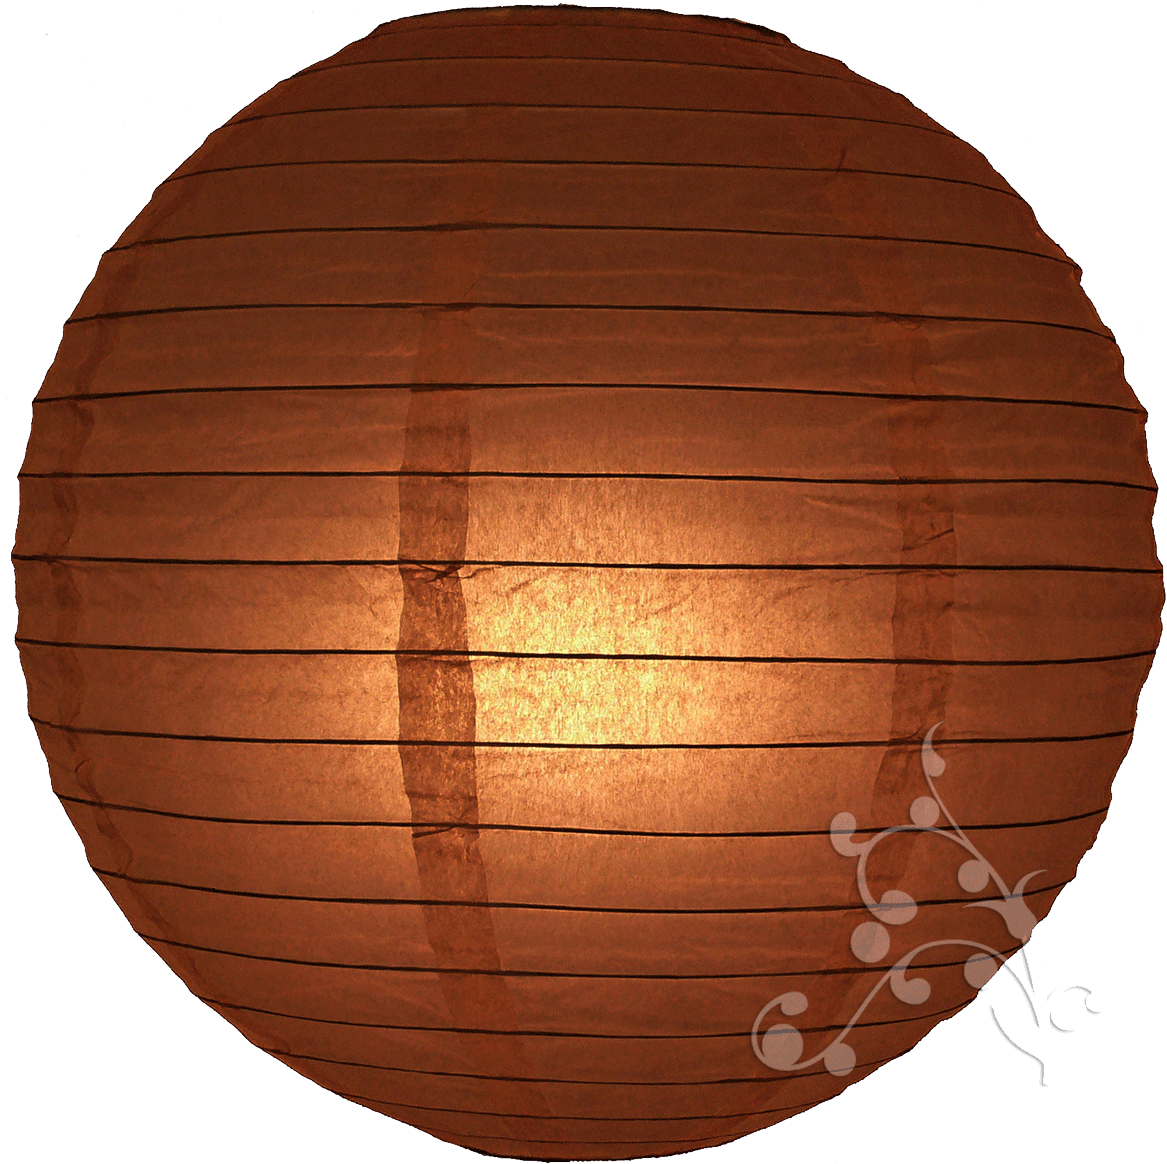 30 Inch Chocolate Brown Lanterns - 10 Bruine Lampionnen Met Een Diameter Van 35cm (1181x1164), Png Download